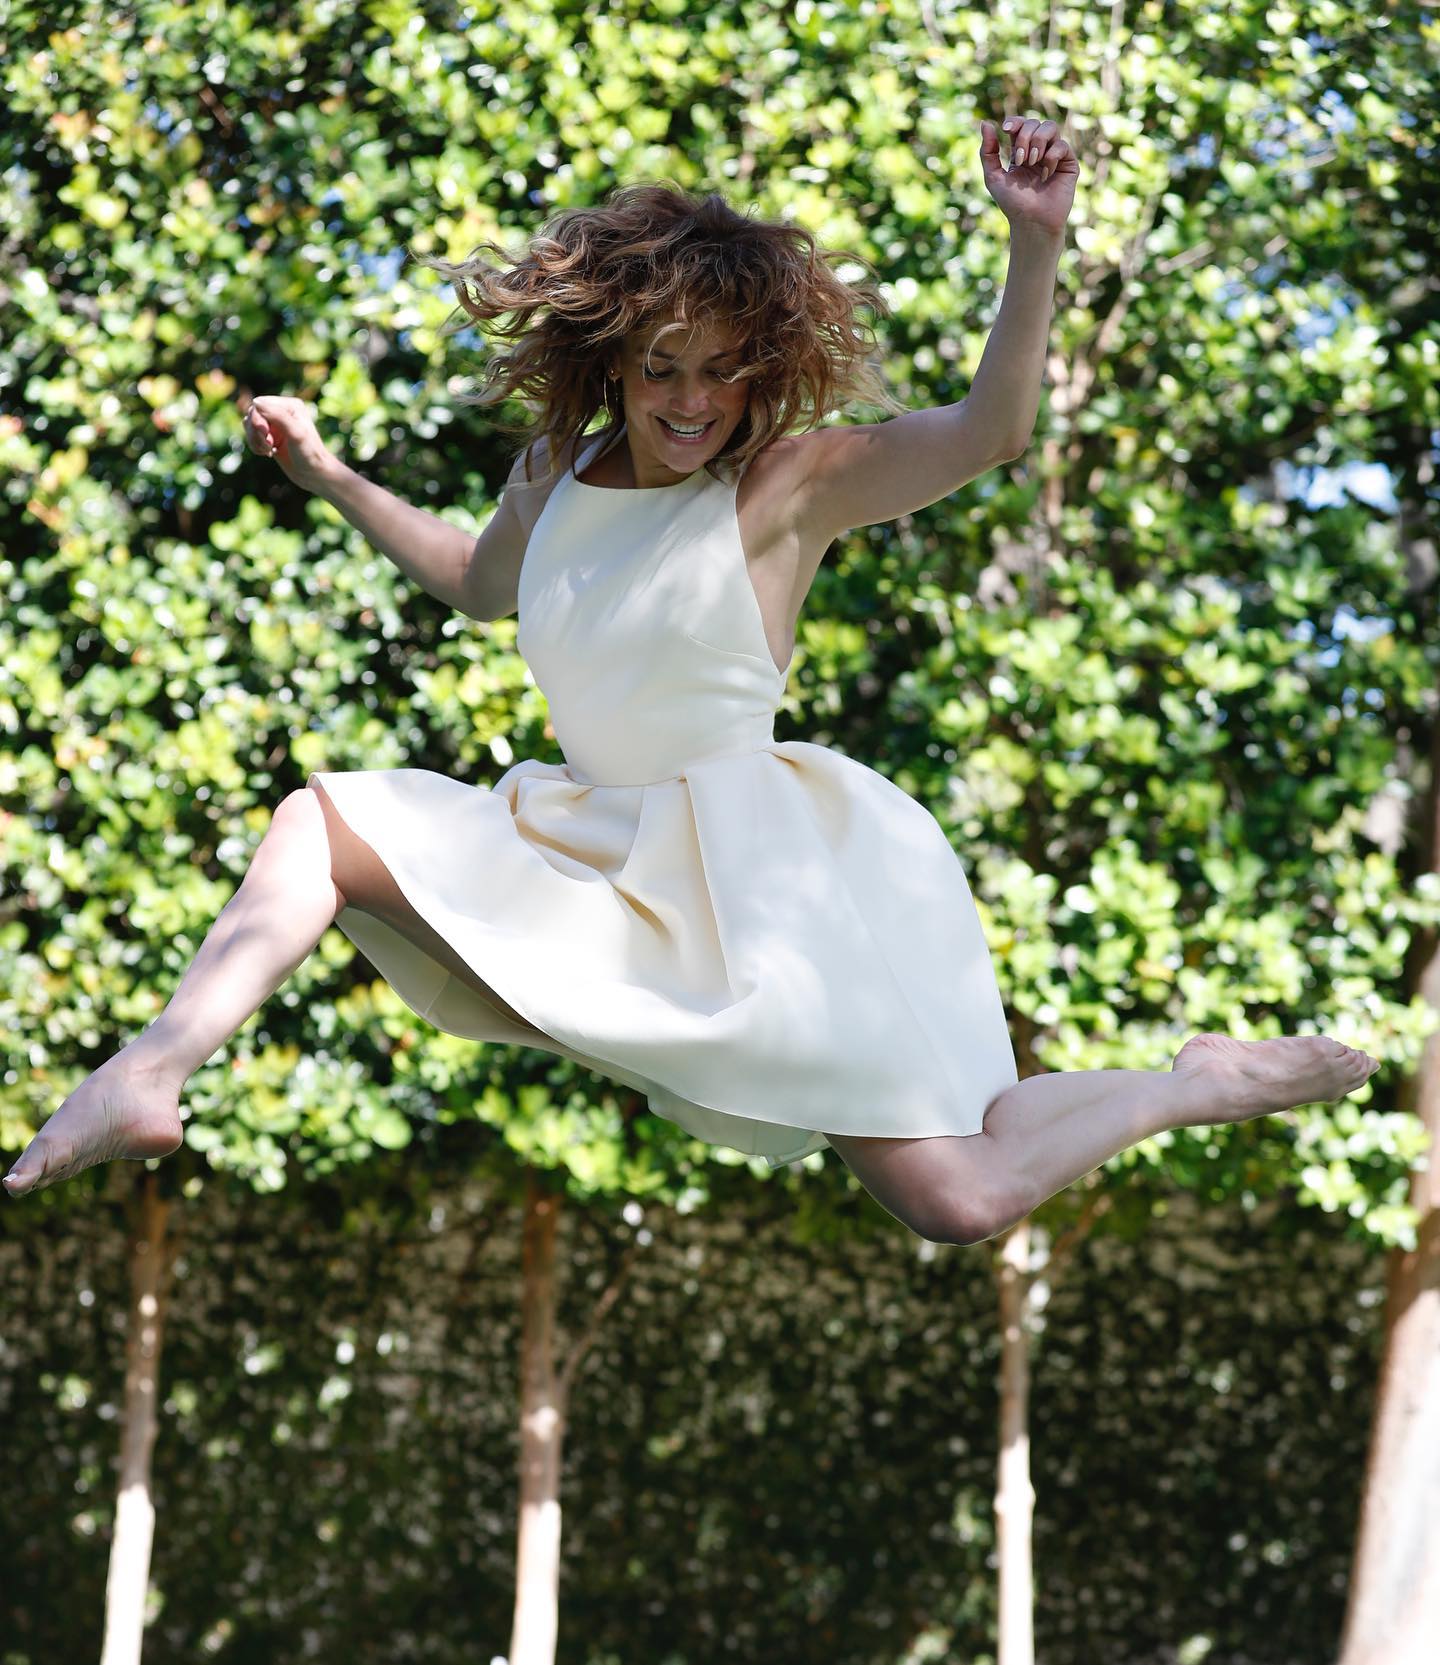 Photo n°4 : Jennifer Lopez saute pour la joie!